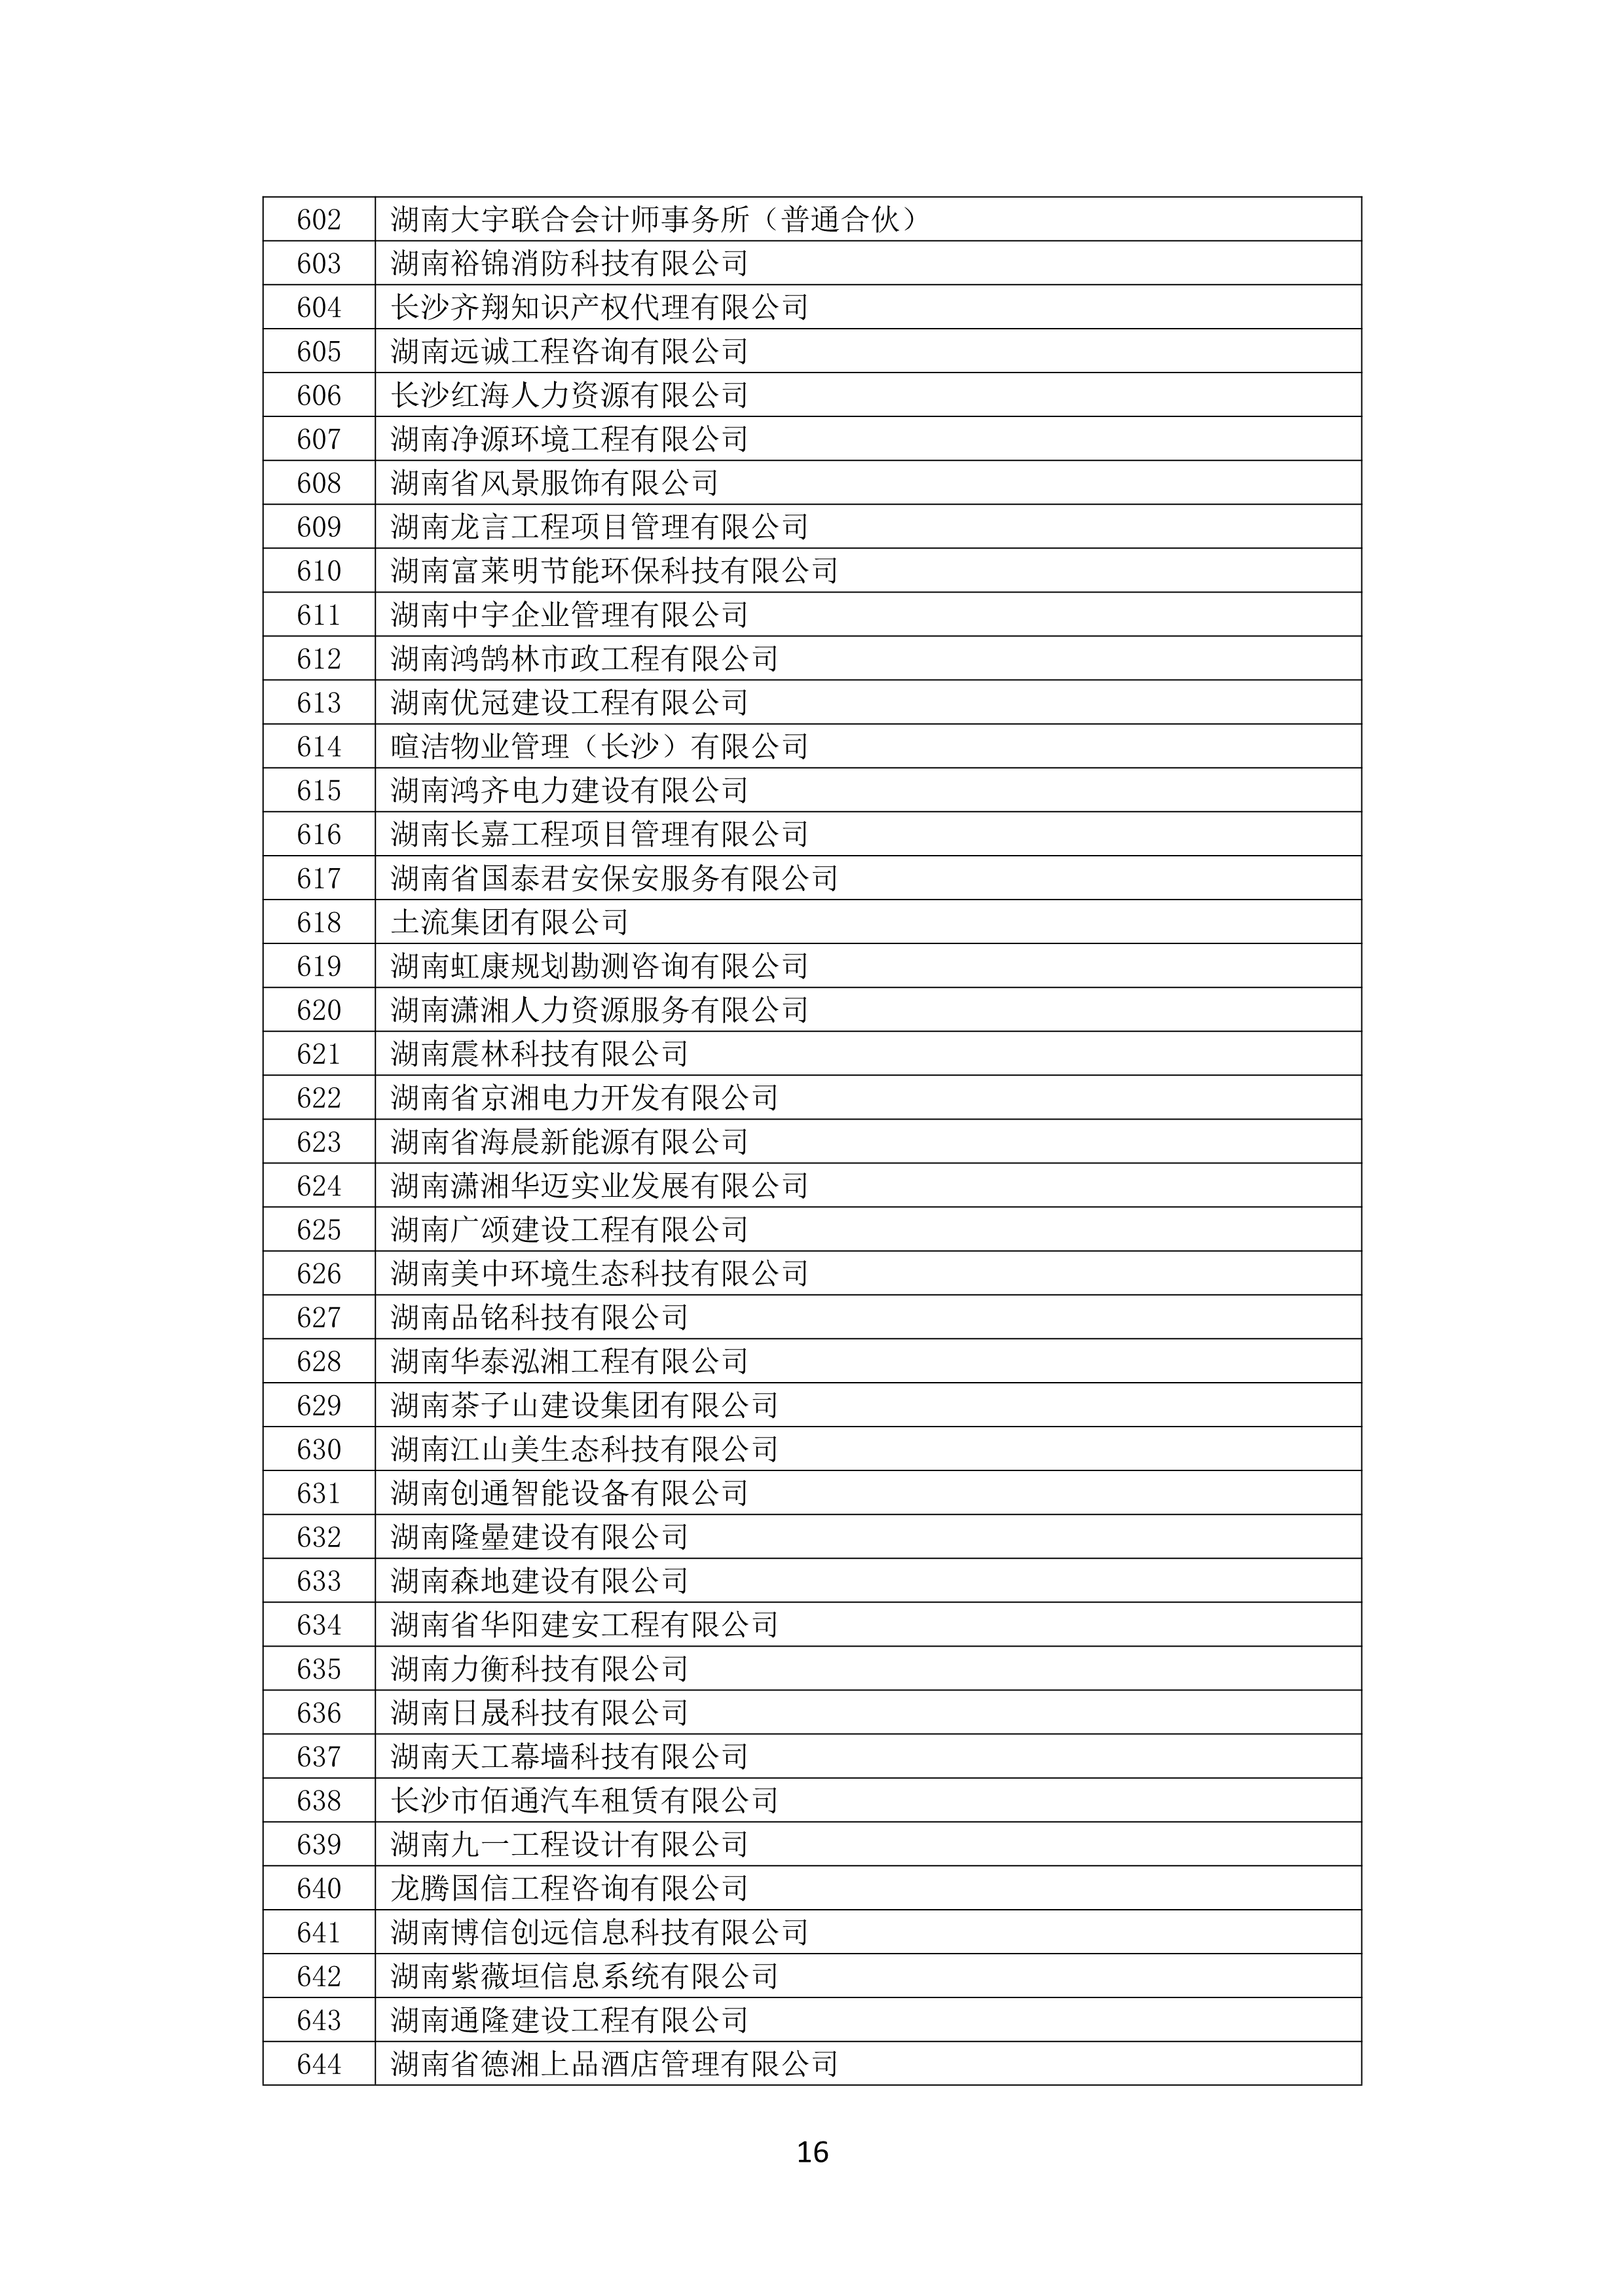 2021 年(nián)度湖南省守合同重信用企業名單_17.png